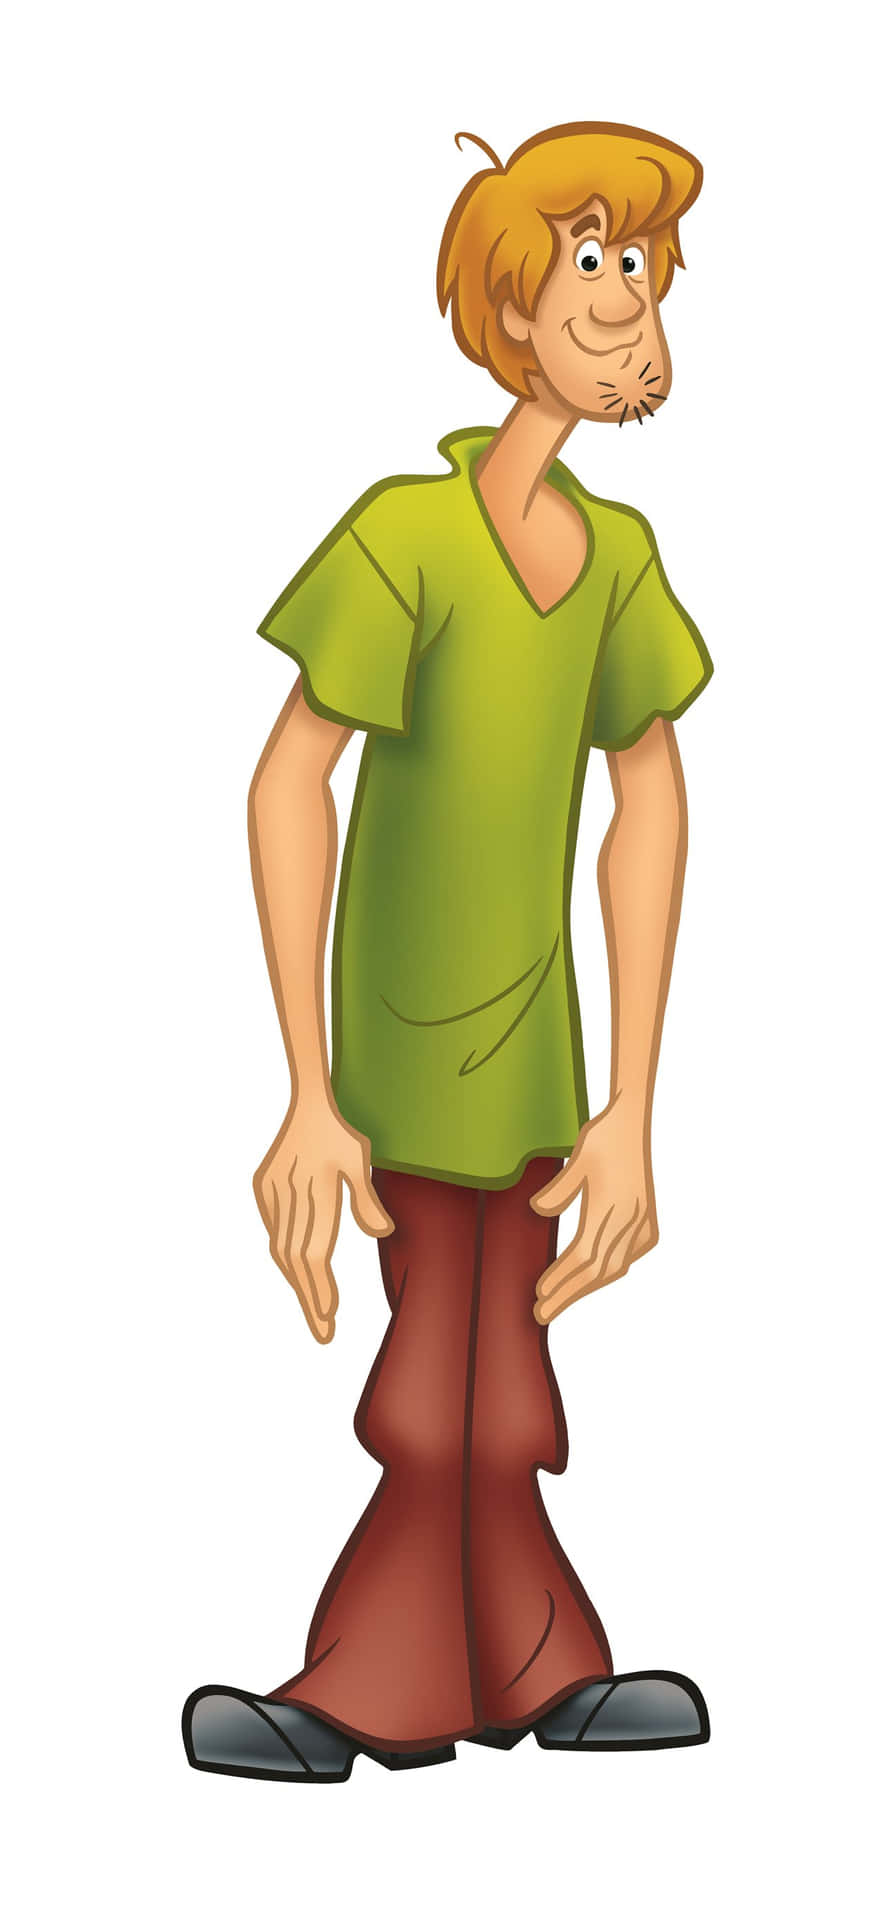 Green shirt cartoon character